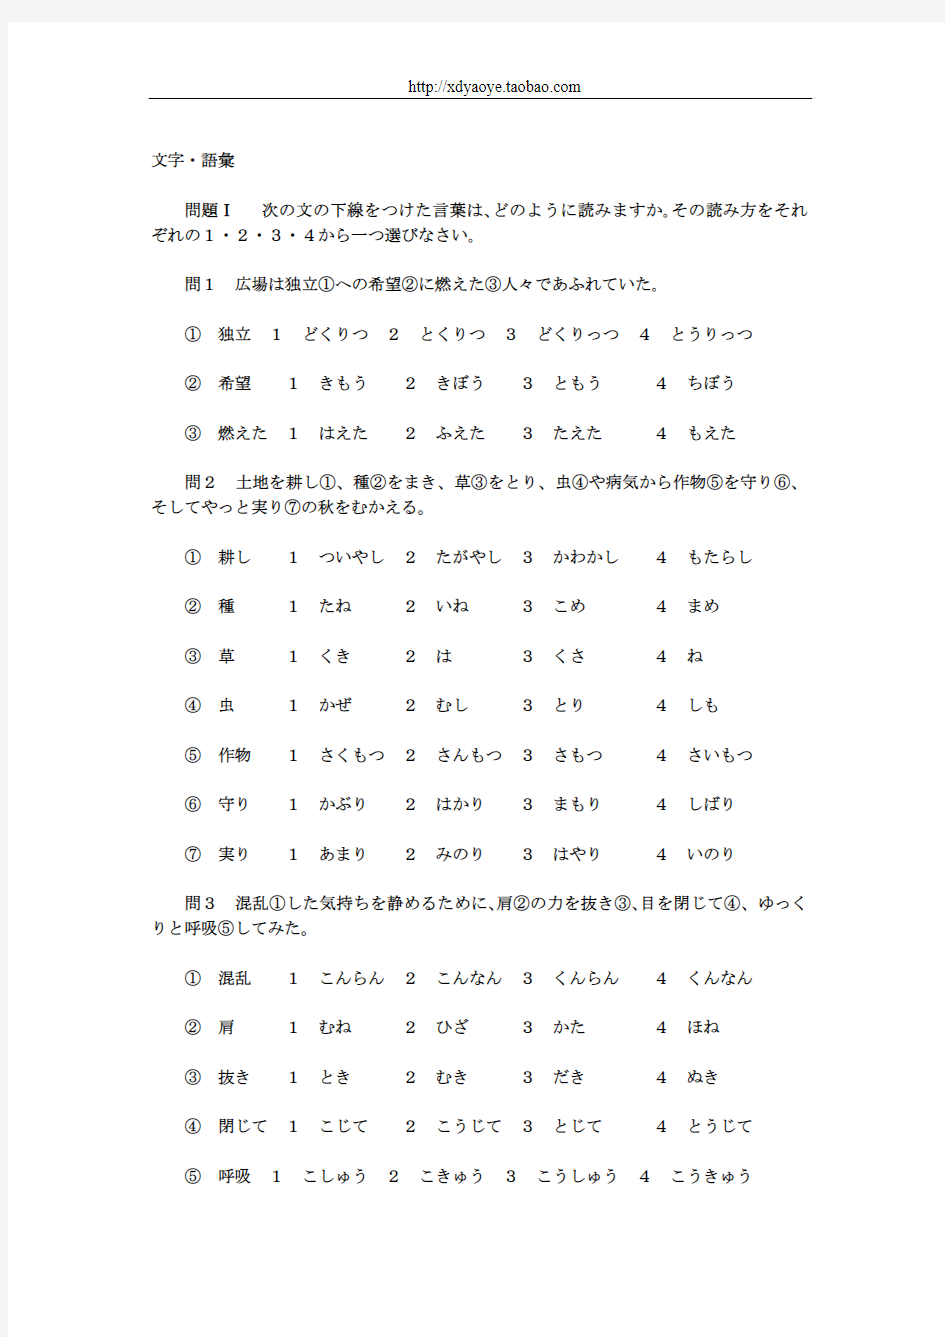 _2013年最新日语三级能力等级考试(1)